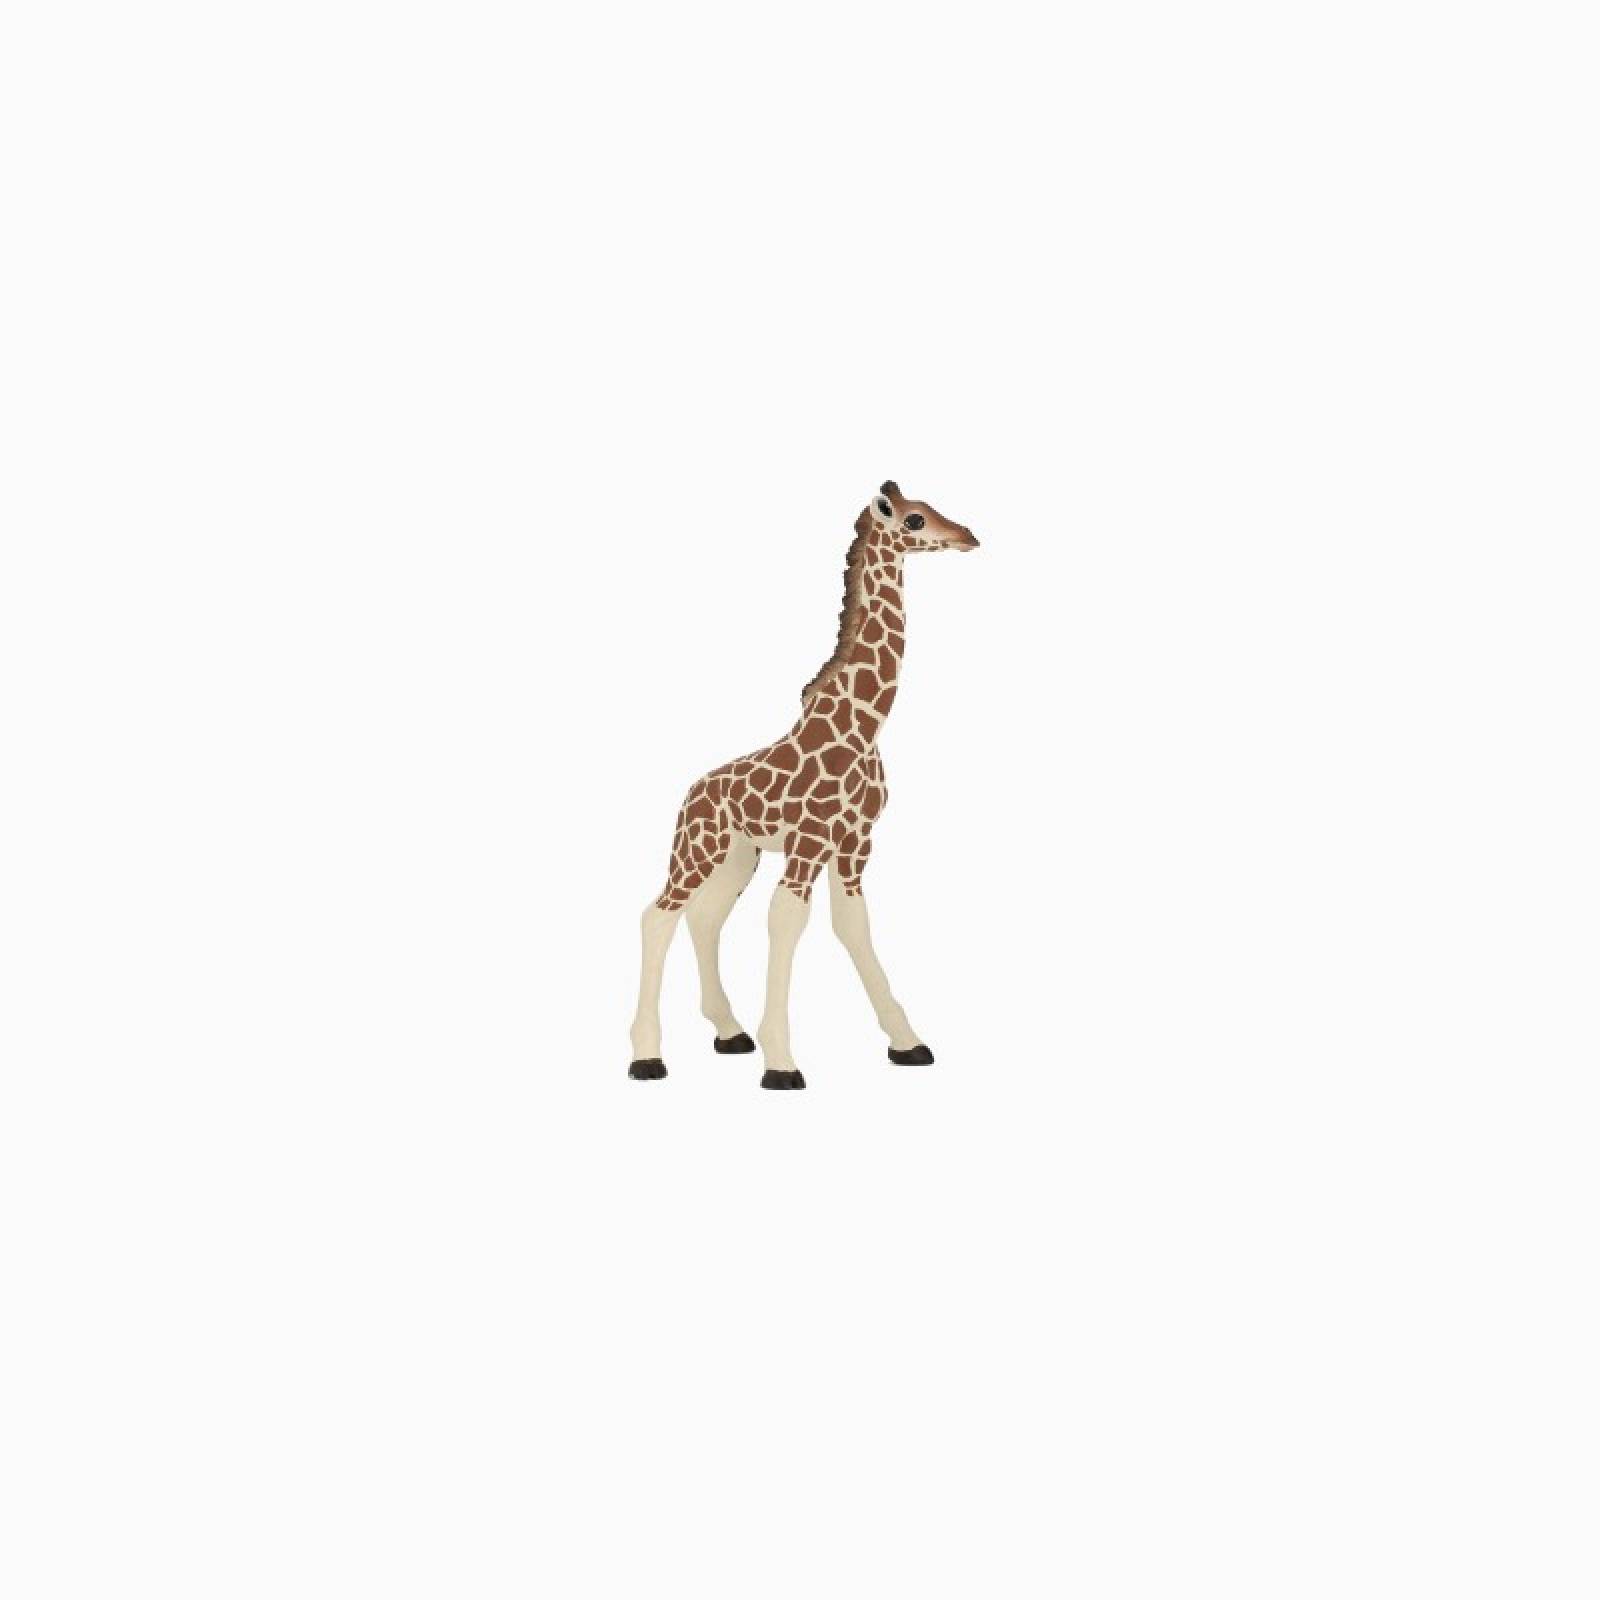 Giraffe Calf - Papo Wild Animal Figure